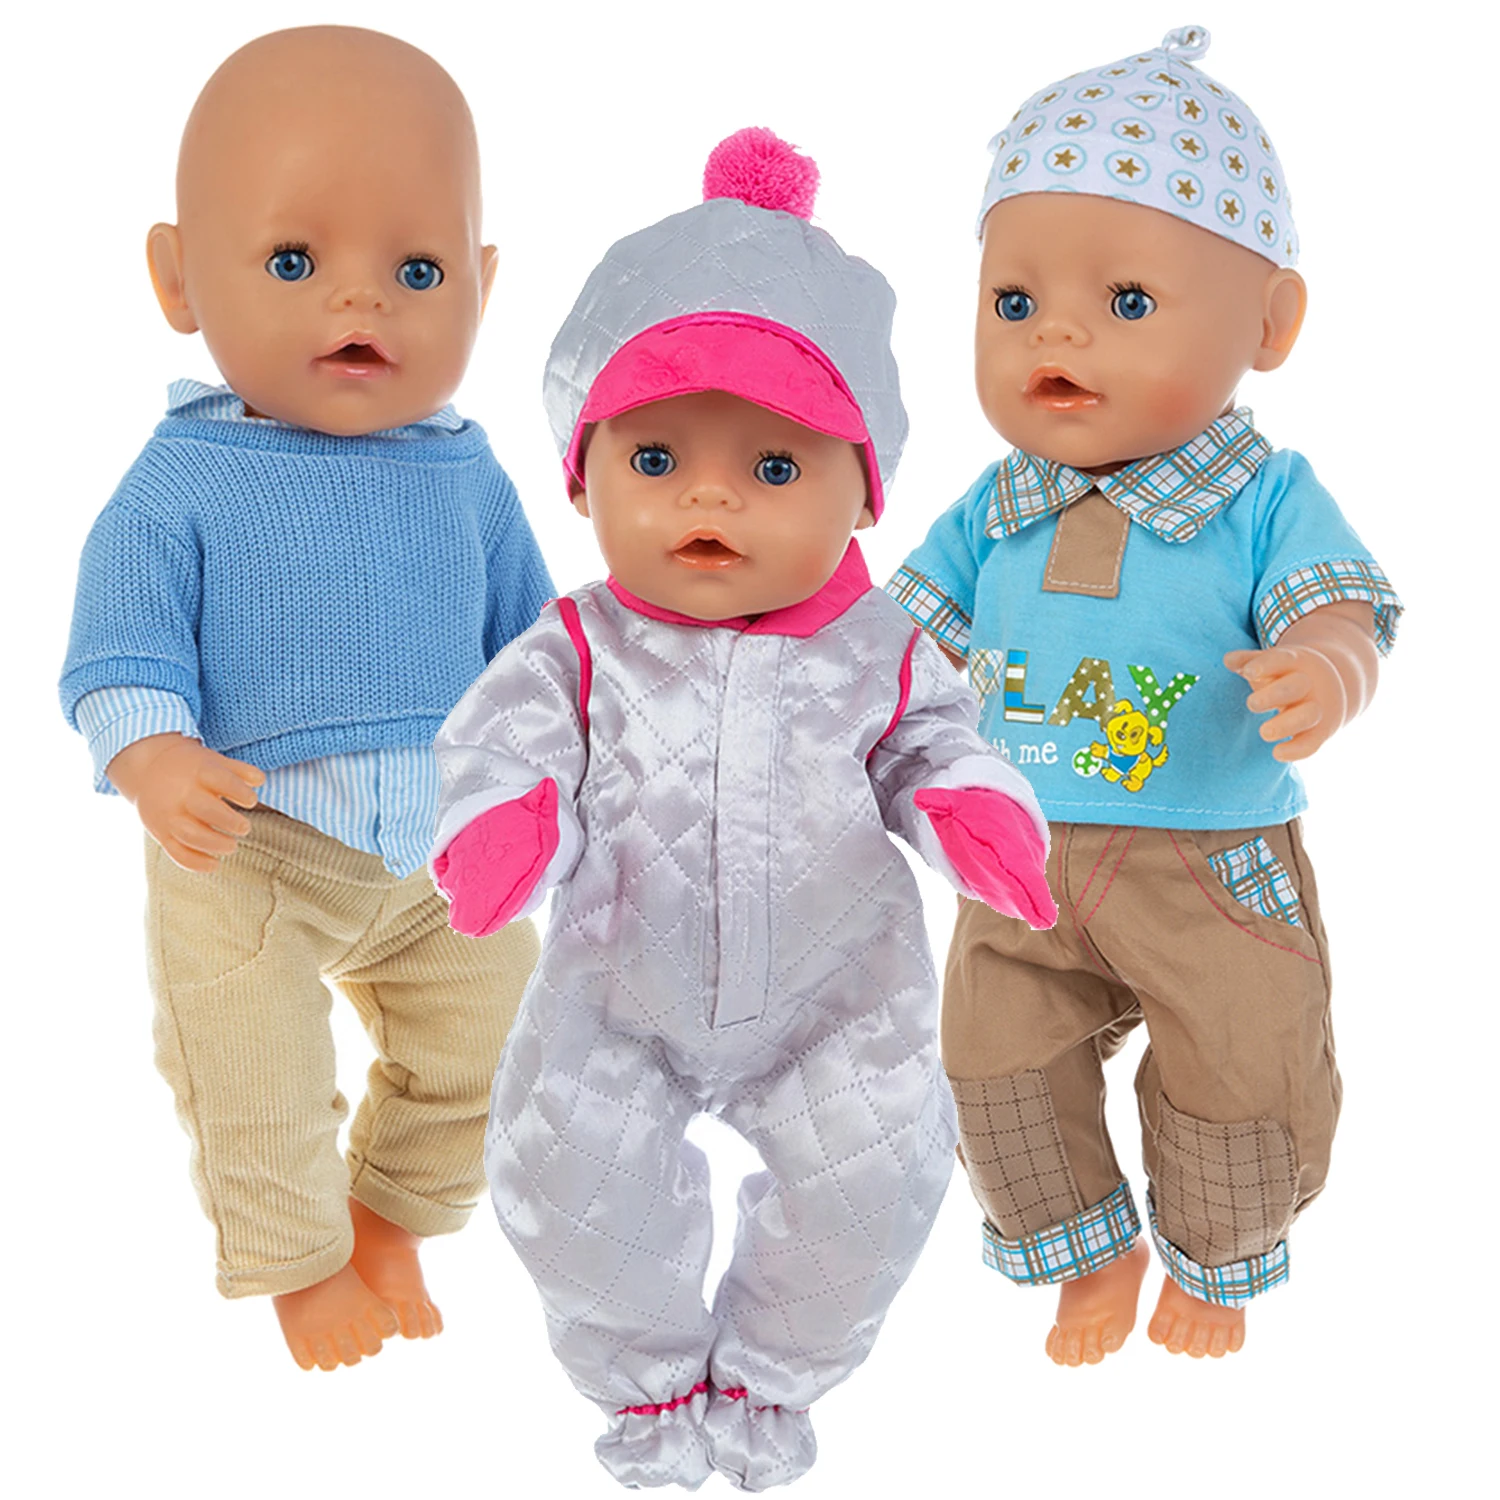 2021 новая горячая распродажа подходит 18 дюймов для новорожденных куклы одежда аксессуары Серебристый шляпа костюм с курткой-пуховиком для м...